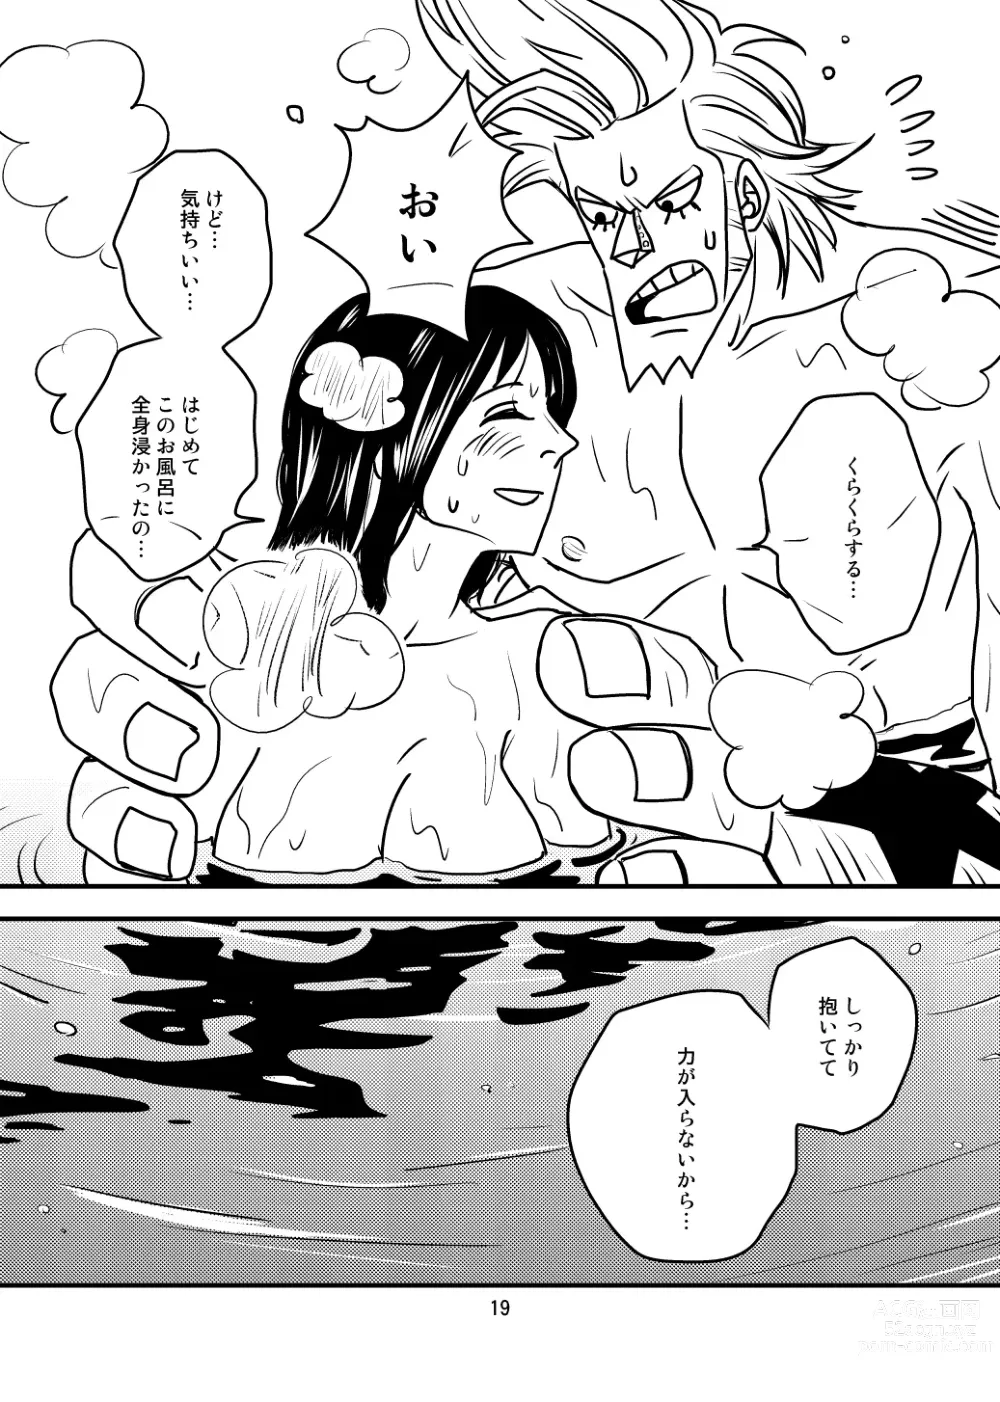 Page 17 of doujinshi Kura-Kura